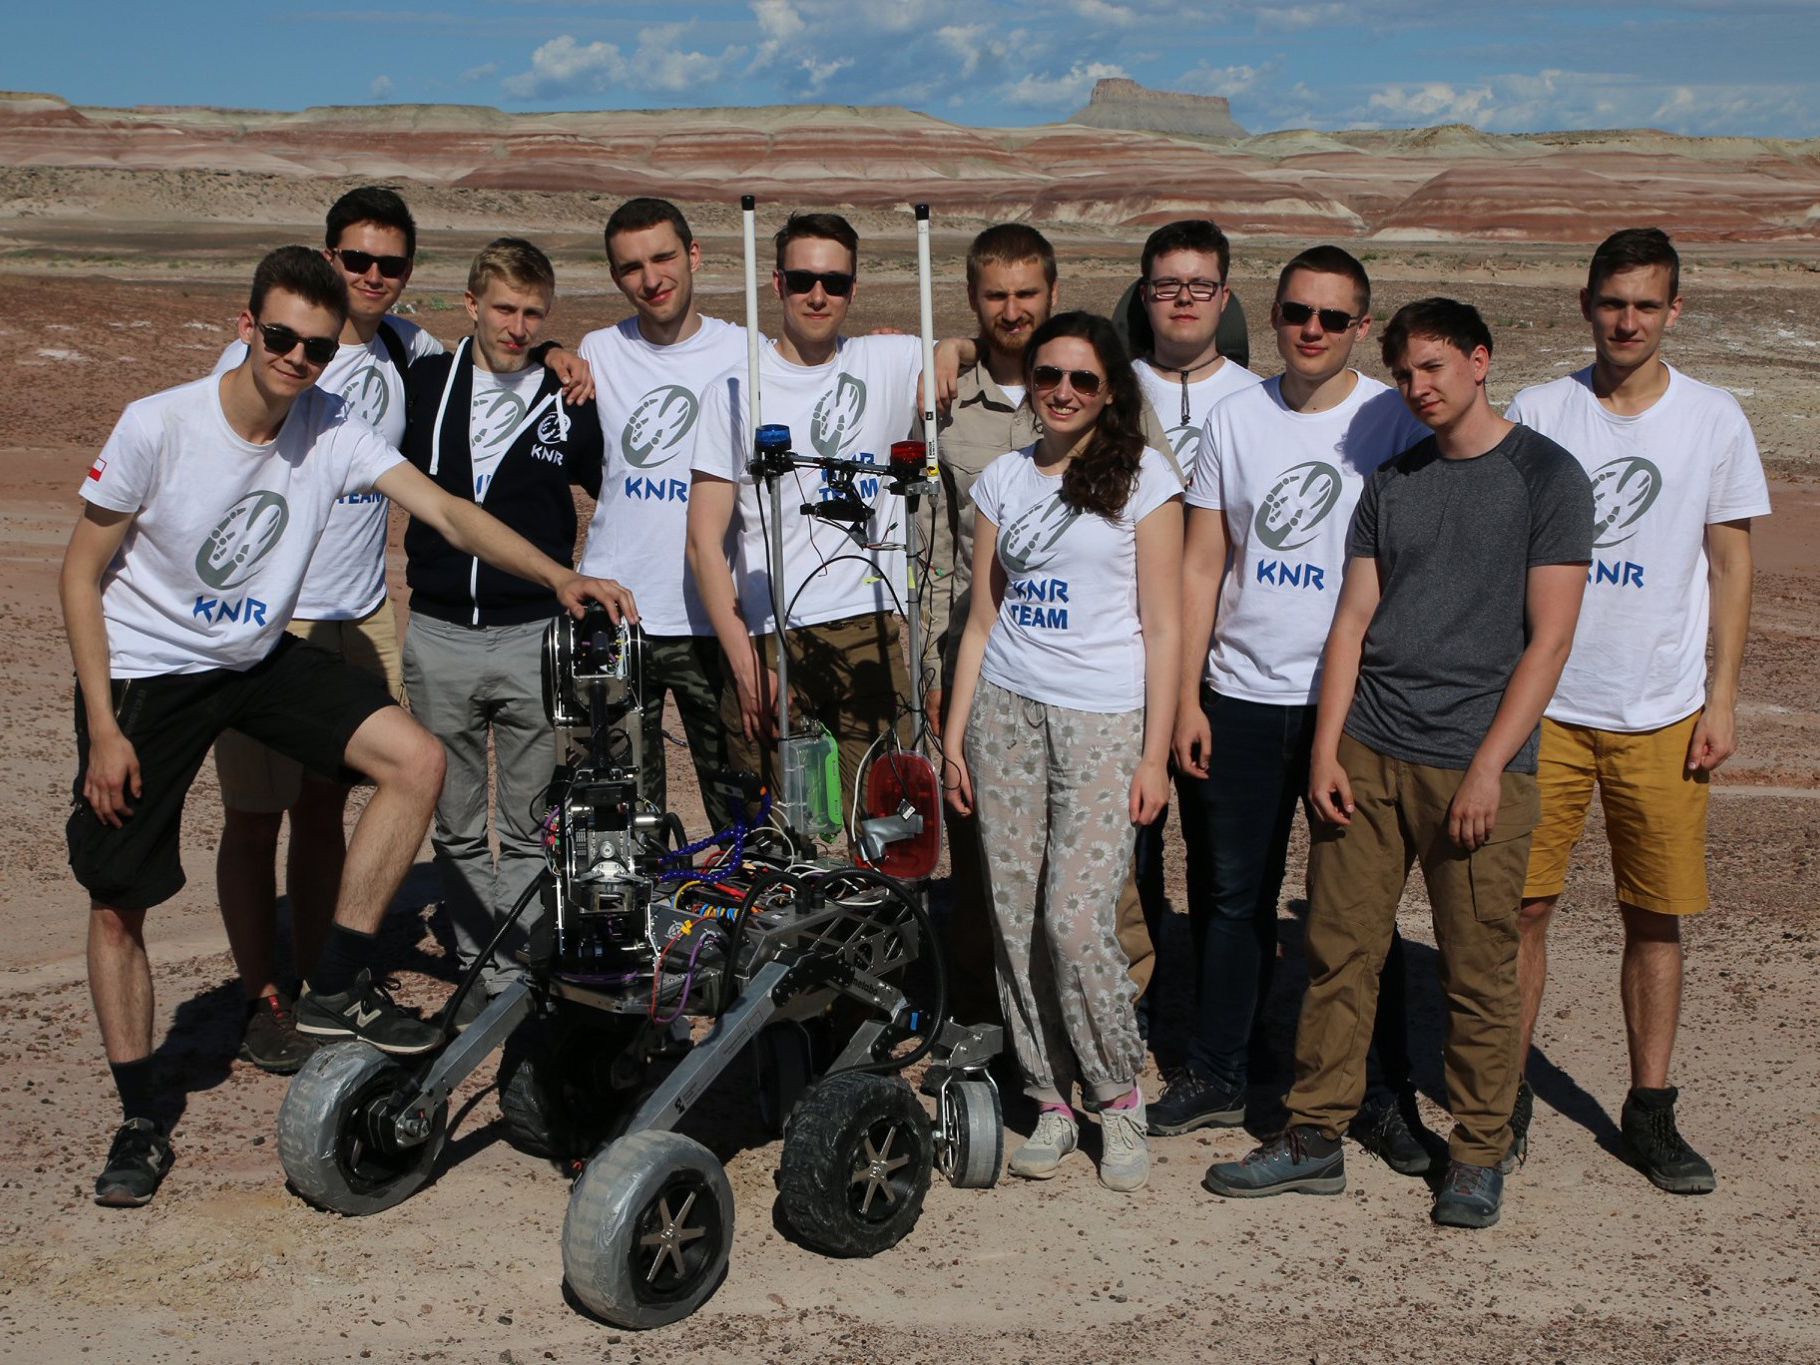 Zespol lazika marsjanskiego na zawodach Univeristy Rover Challenge